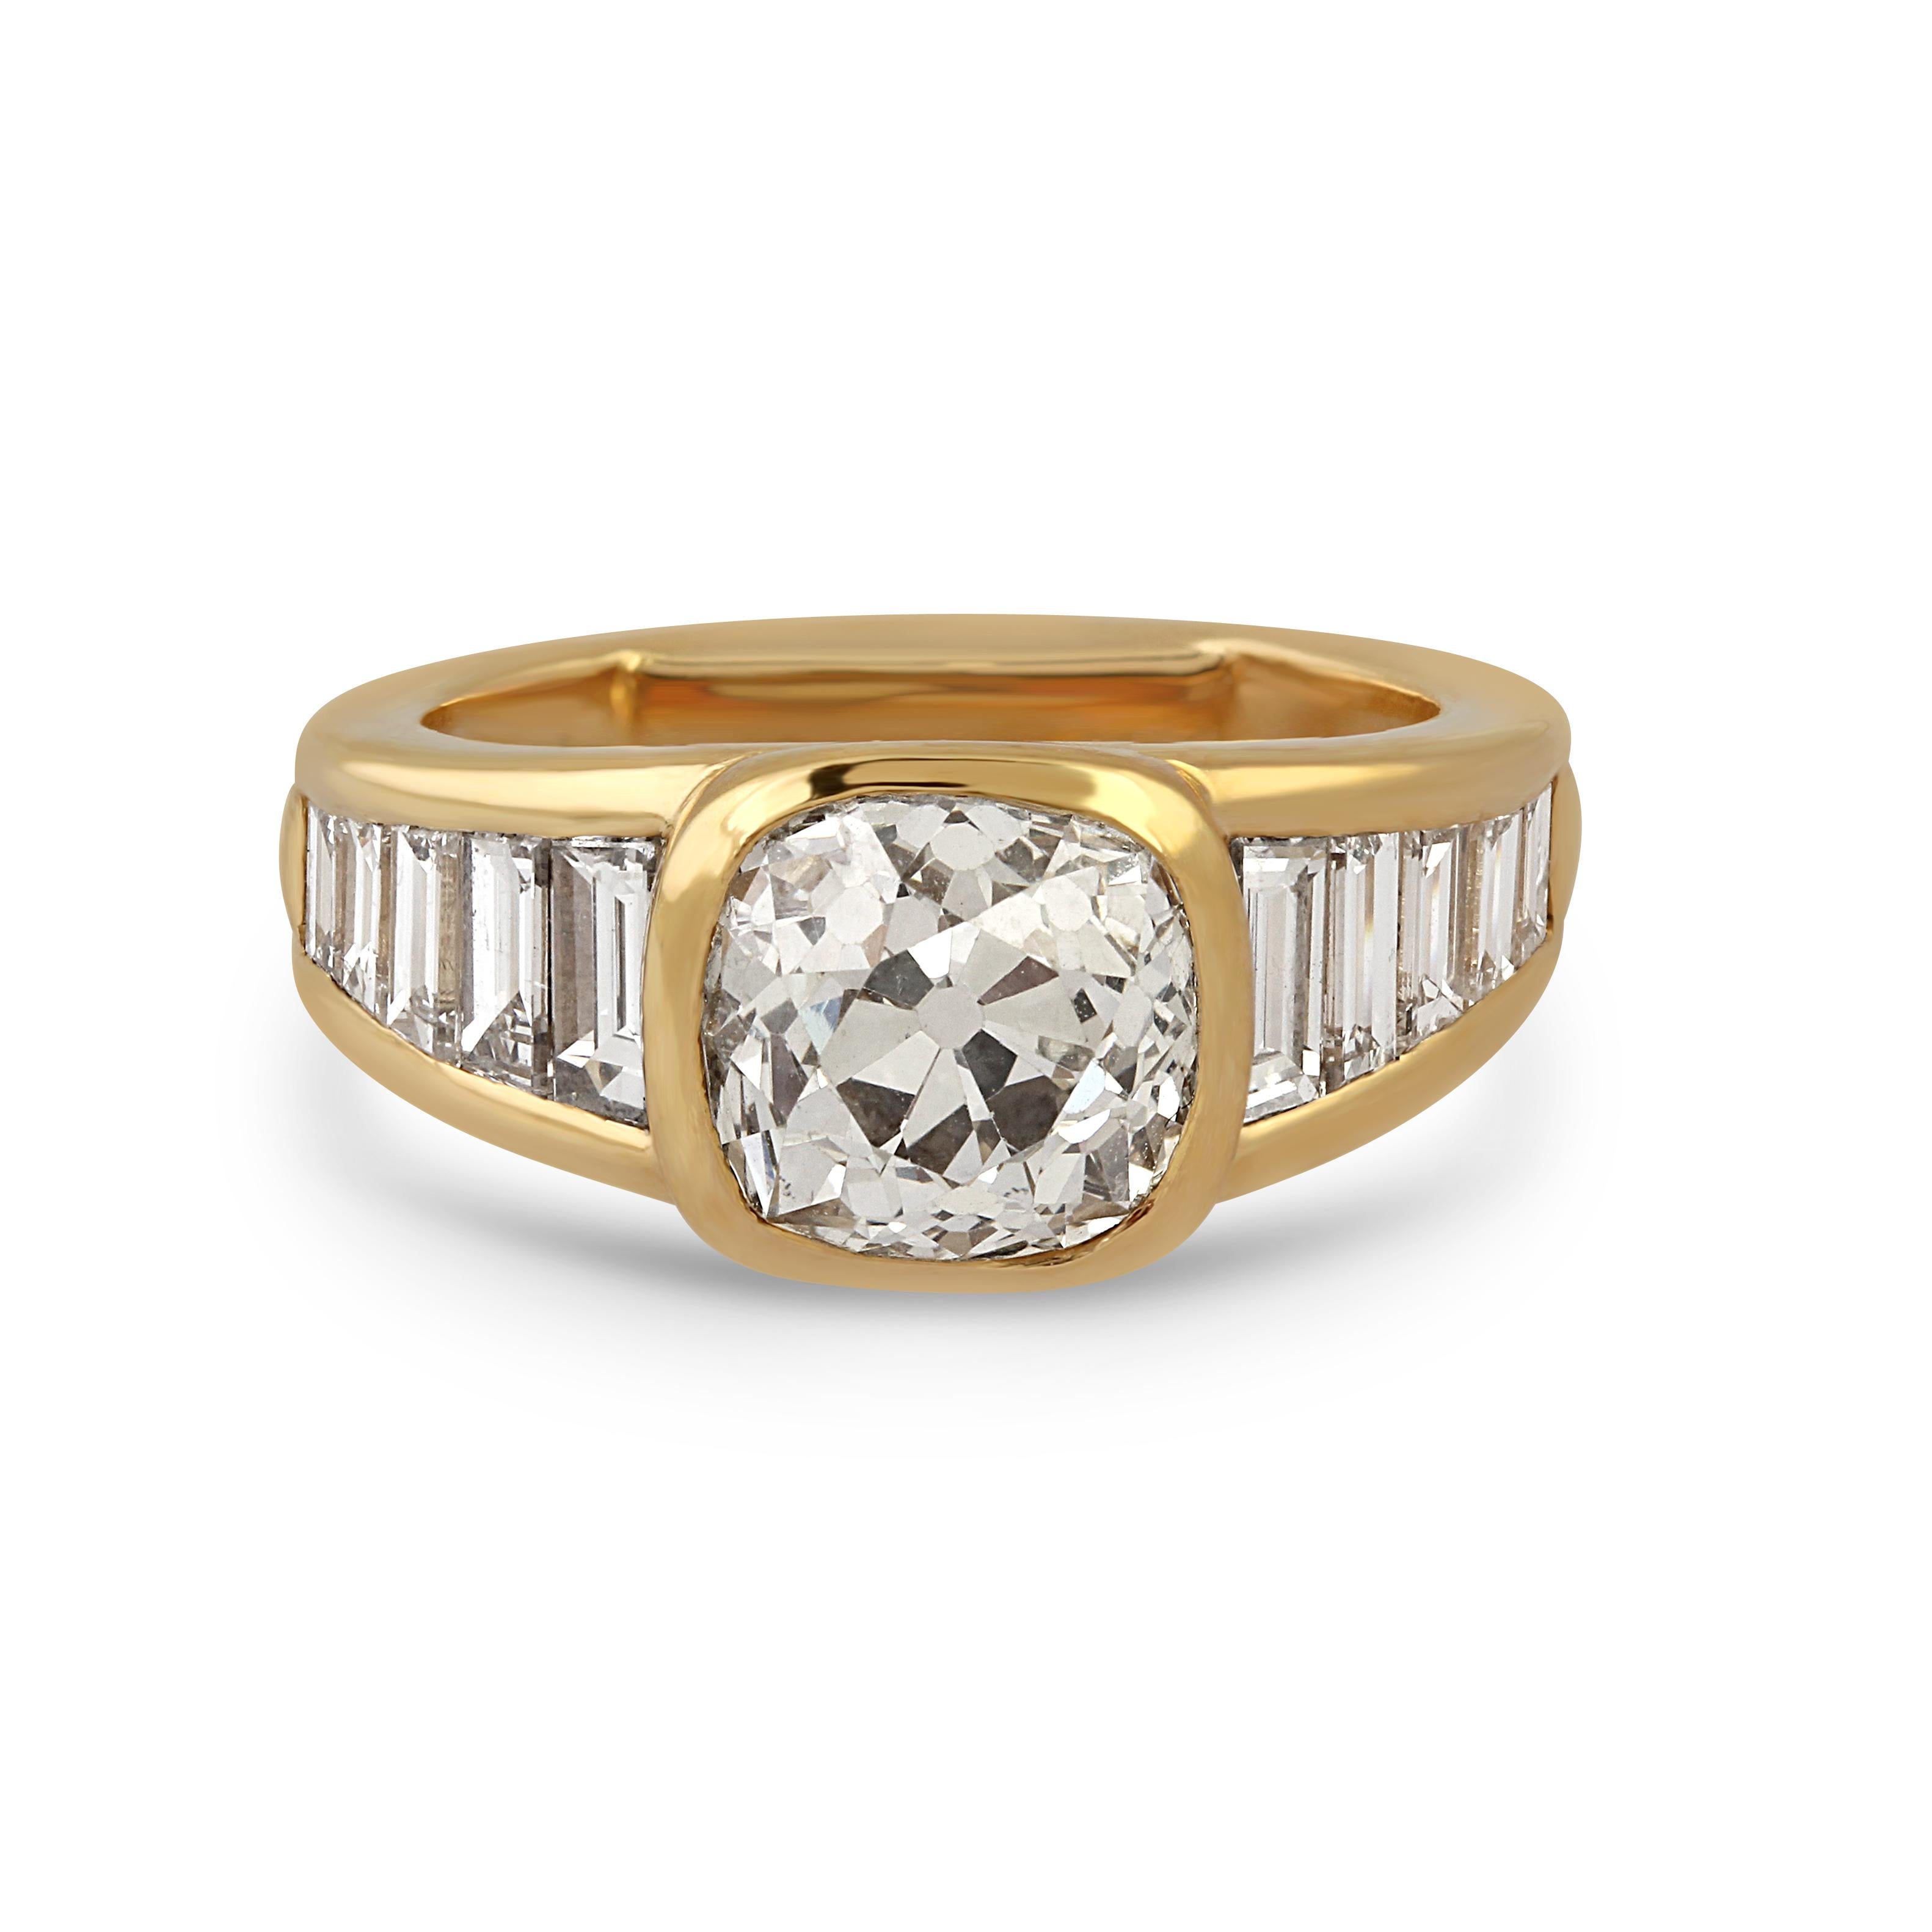 Ein 18k Gold & Diamant Ring von Mauboussin, besetzt mit einem 3,05ct alten Diamant im Kissenschliff.

Größe: M1/2
Gewicht: 10.28gr
